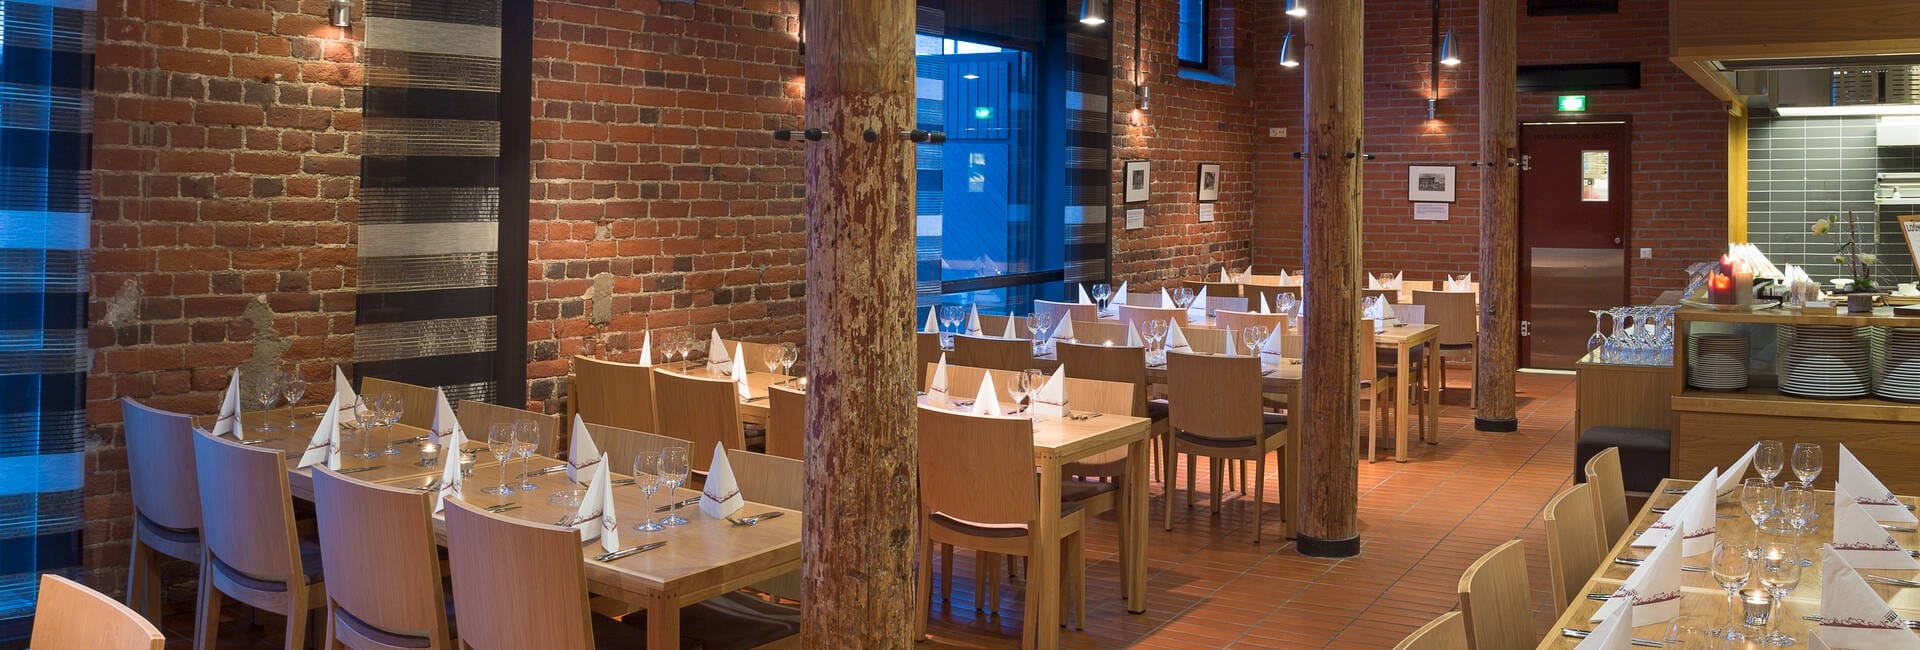 ravintola Tallin salista oleva kuva, jossa on pöytiä ja tuoleja.